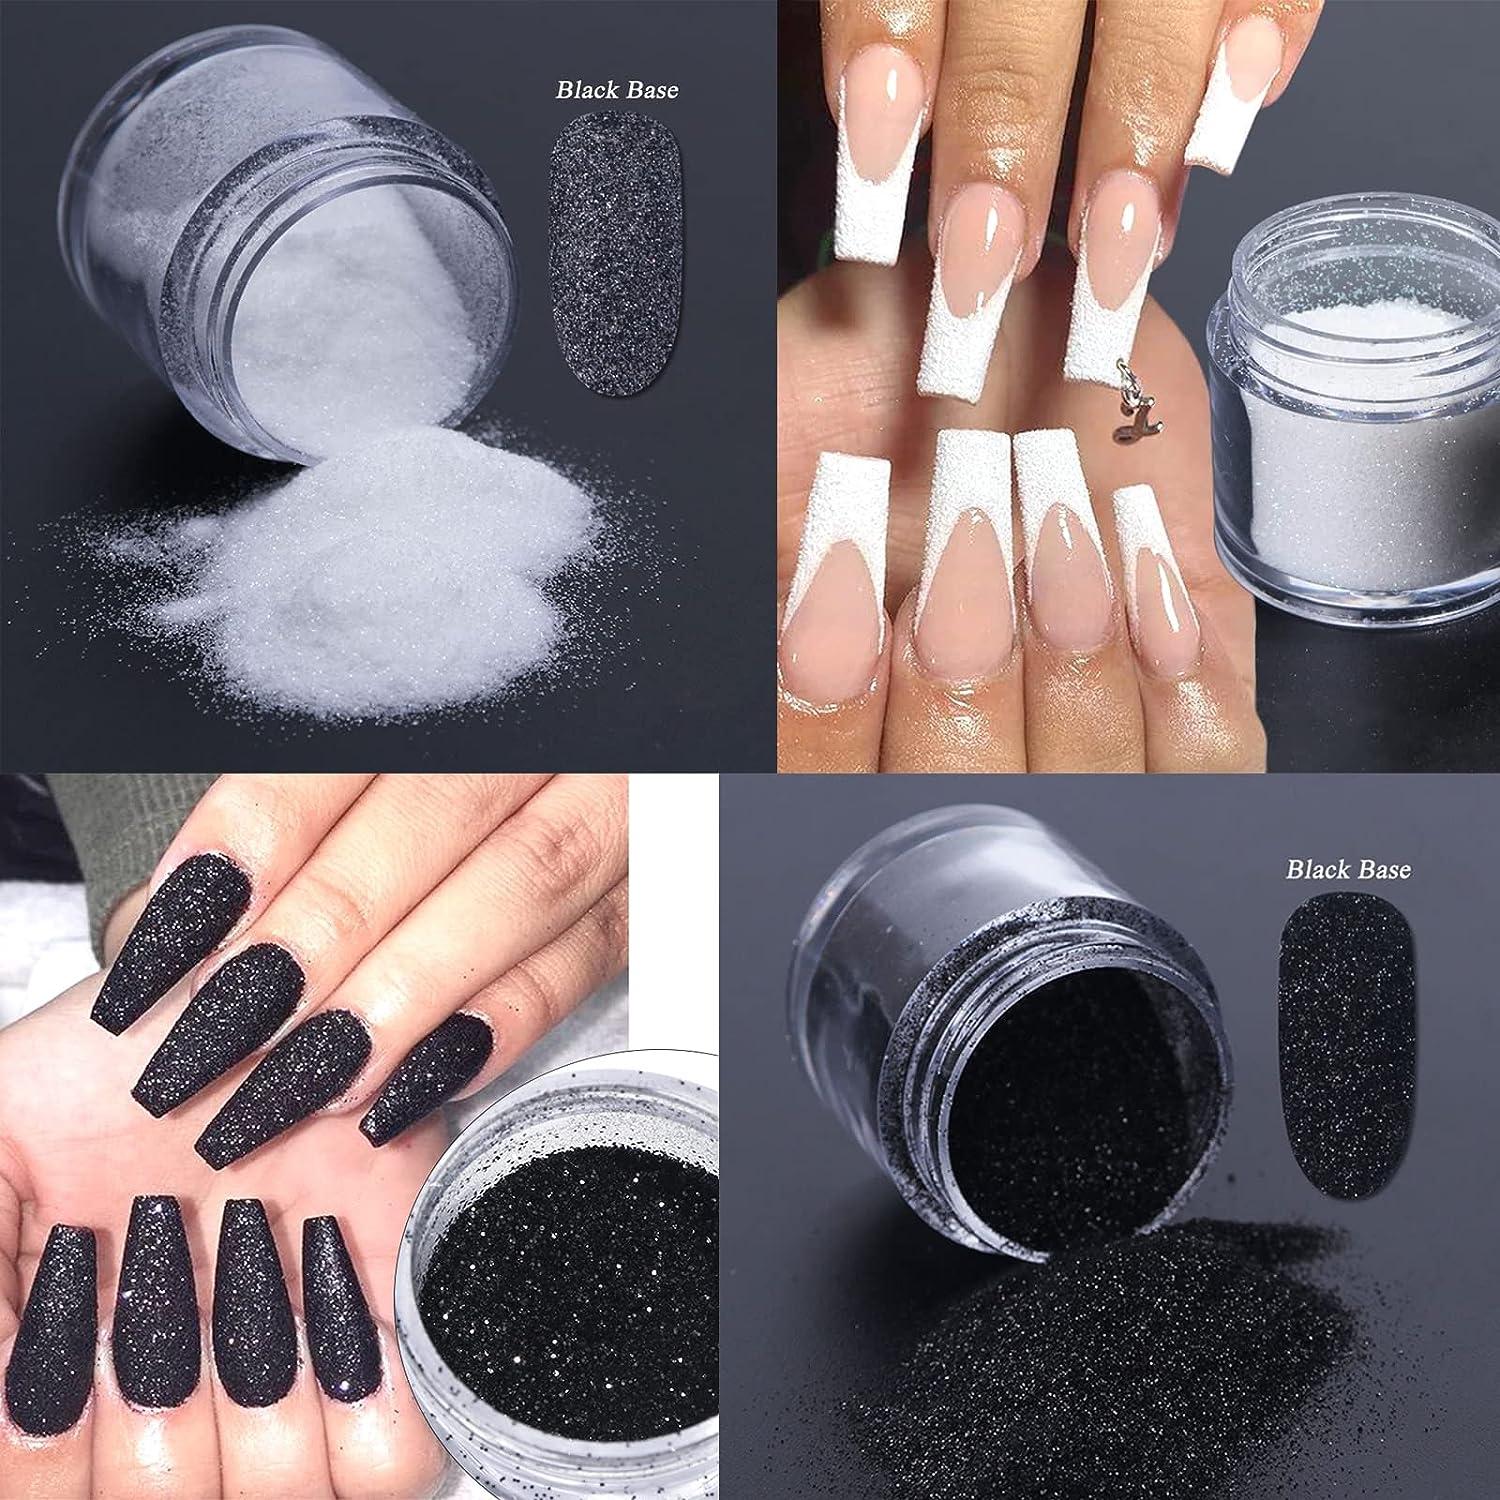 Superfine French Nail Glitter Powder - Black White Snow Design